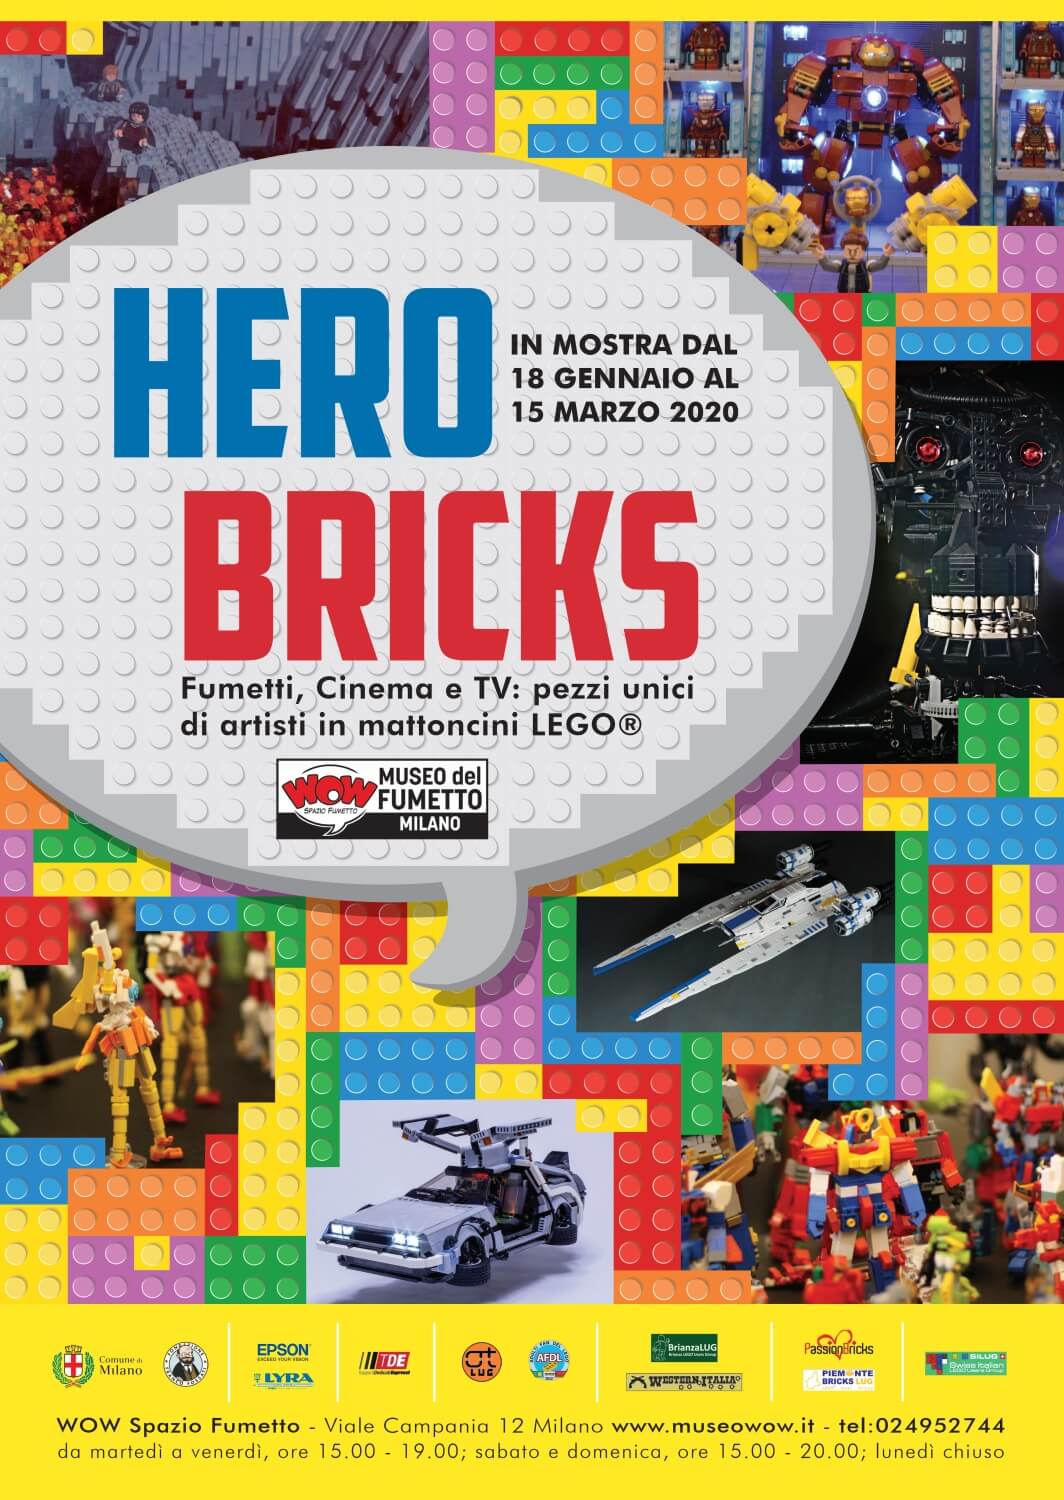 Hero Bricks: la mostra del Lego presso Wow - Spazio Fumetto di Milano